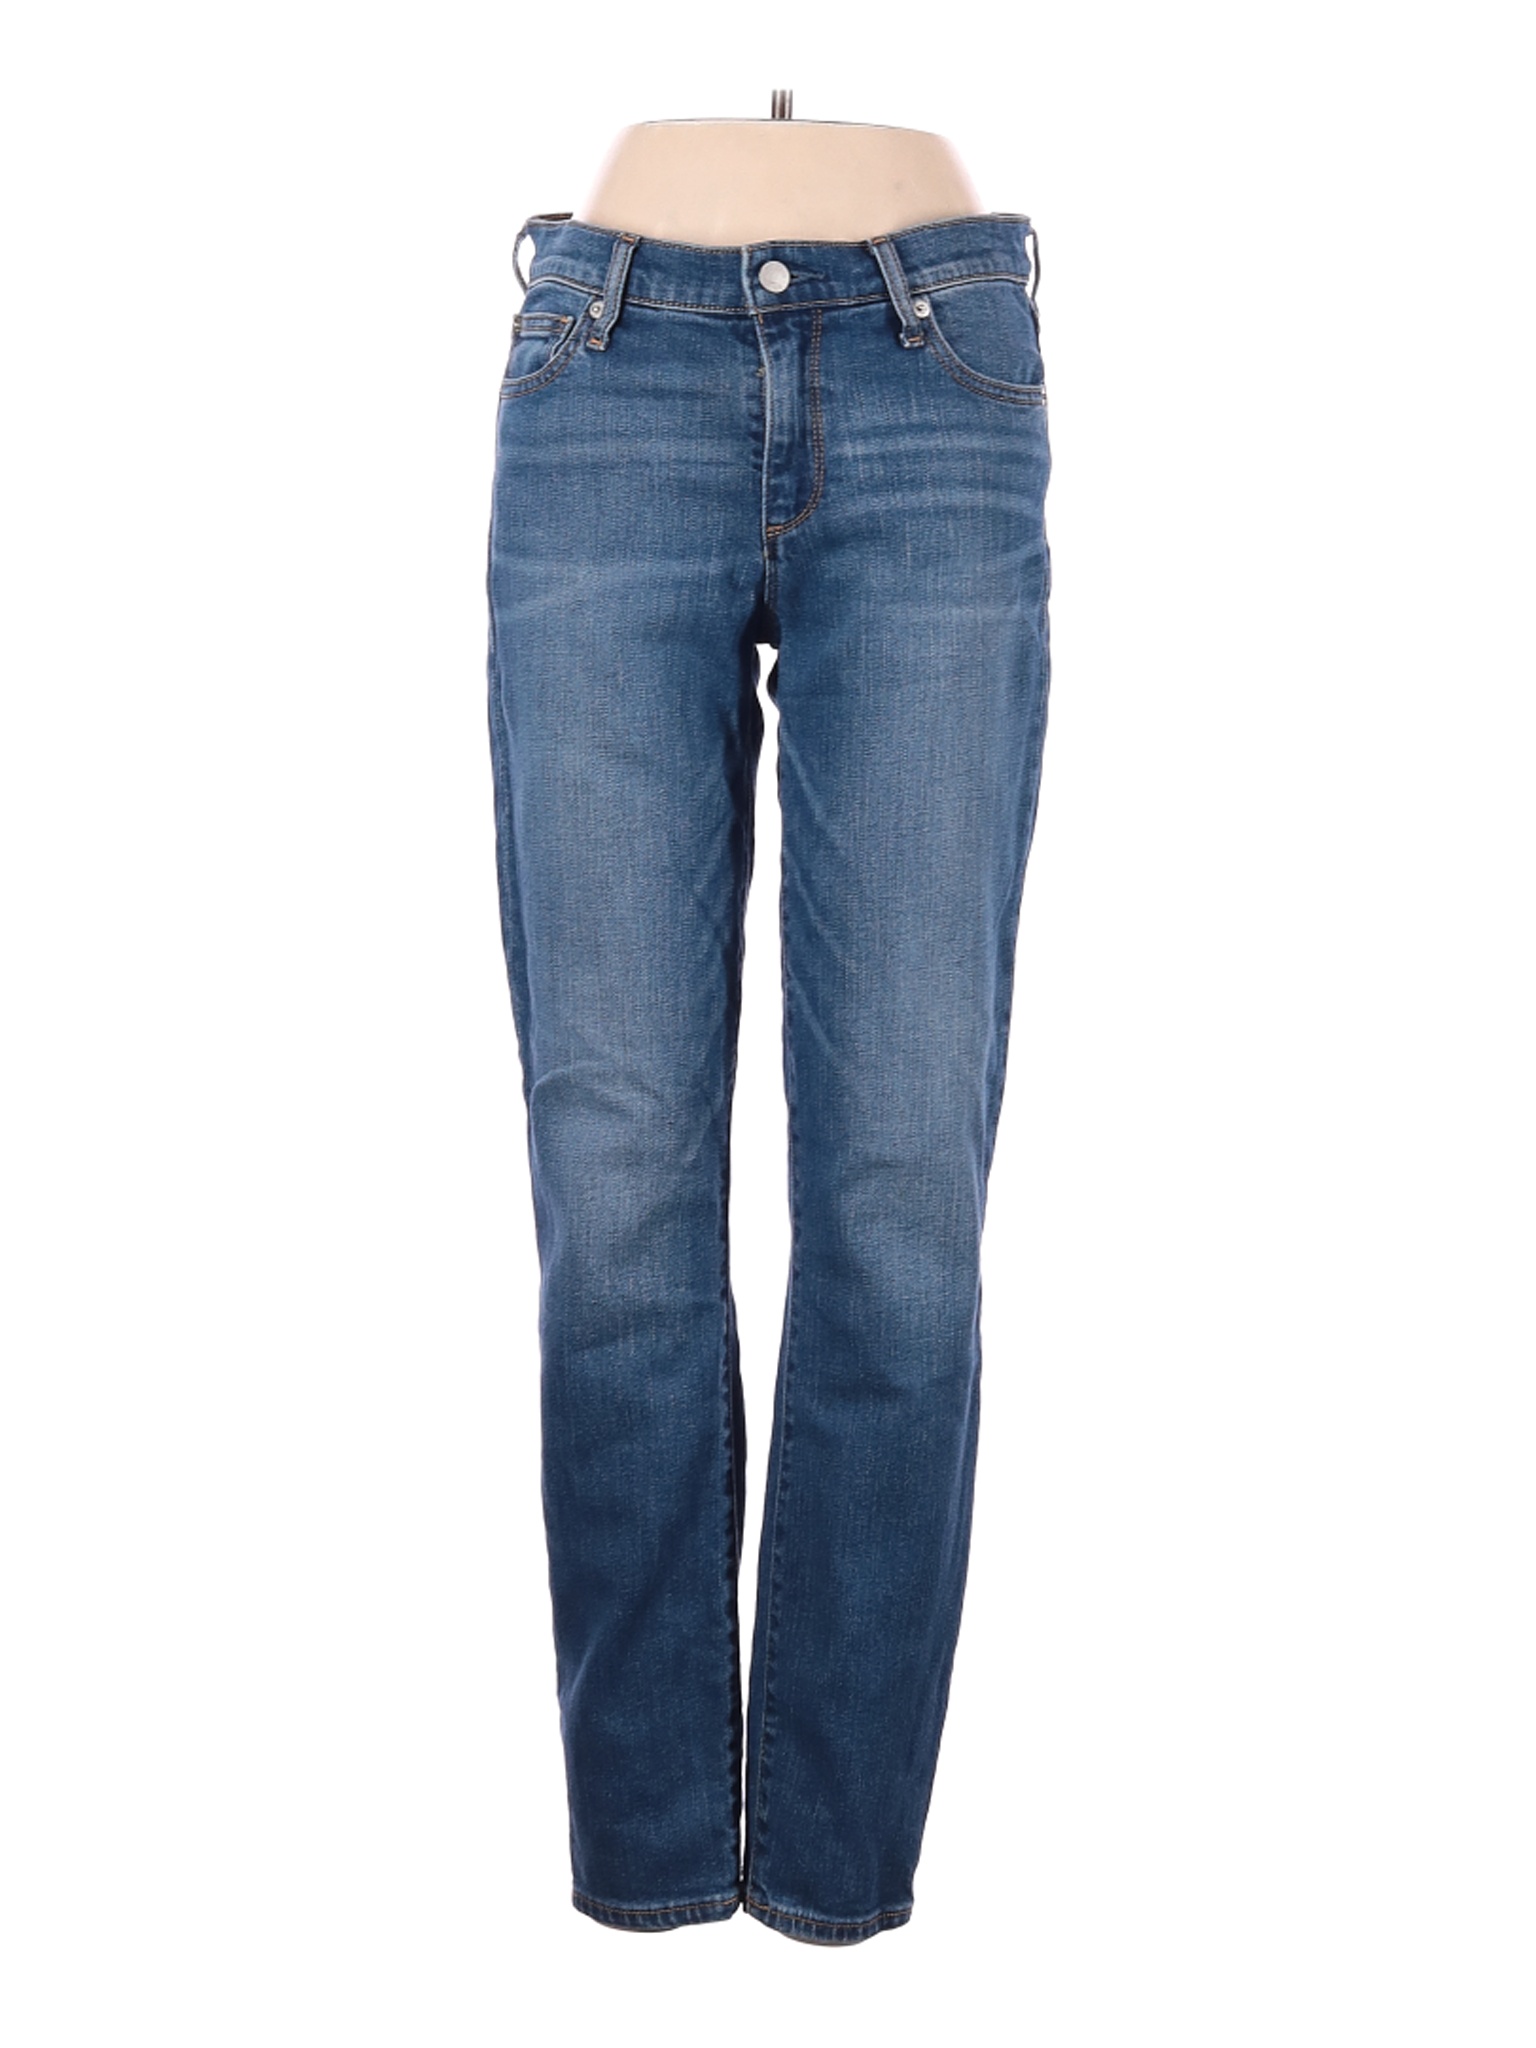 Gap Women Blue Jeans 27W | eBay